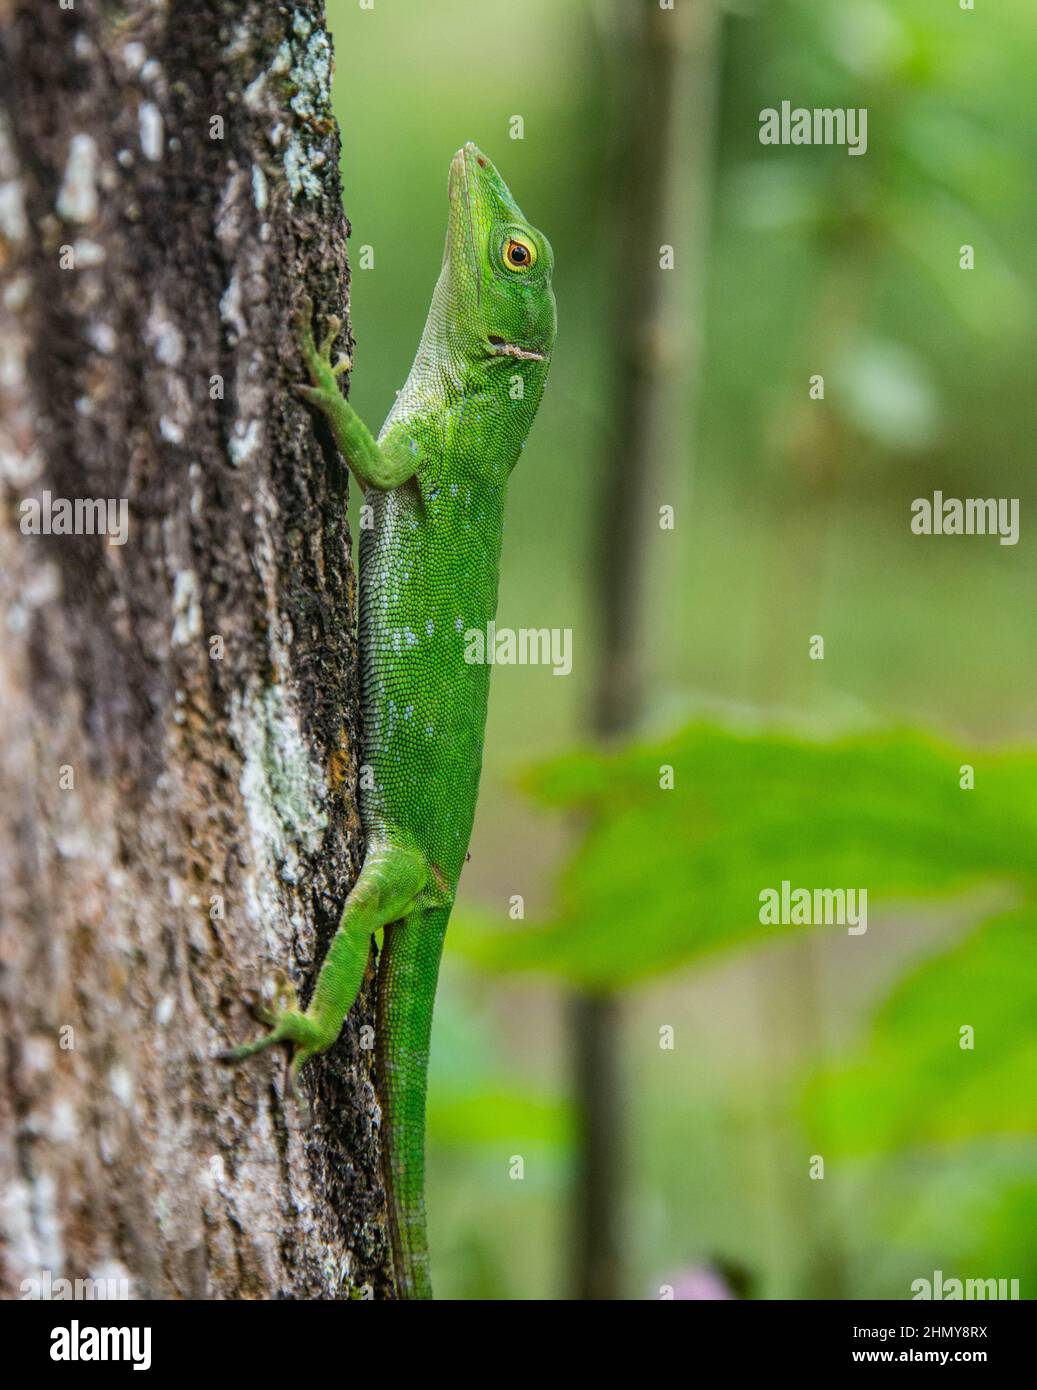 Lizard basilisque commun (Basiliscus basiliscus), Réserve forestière de Monteverde, Costa Rica Banque D'Images